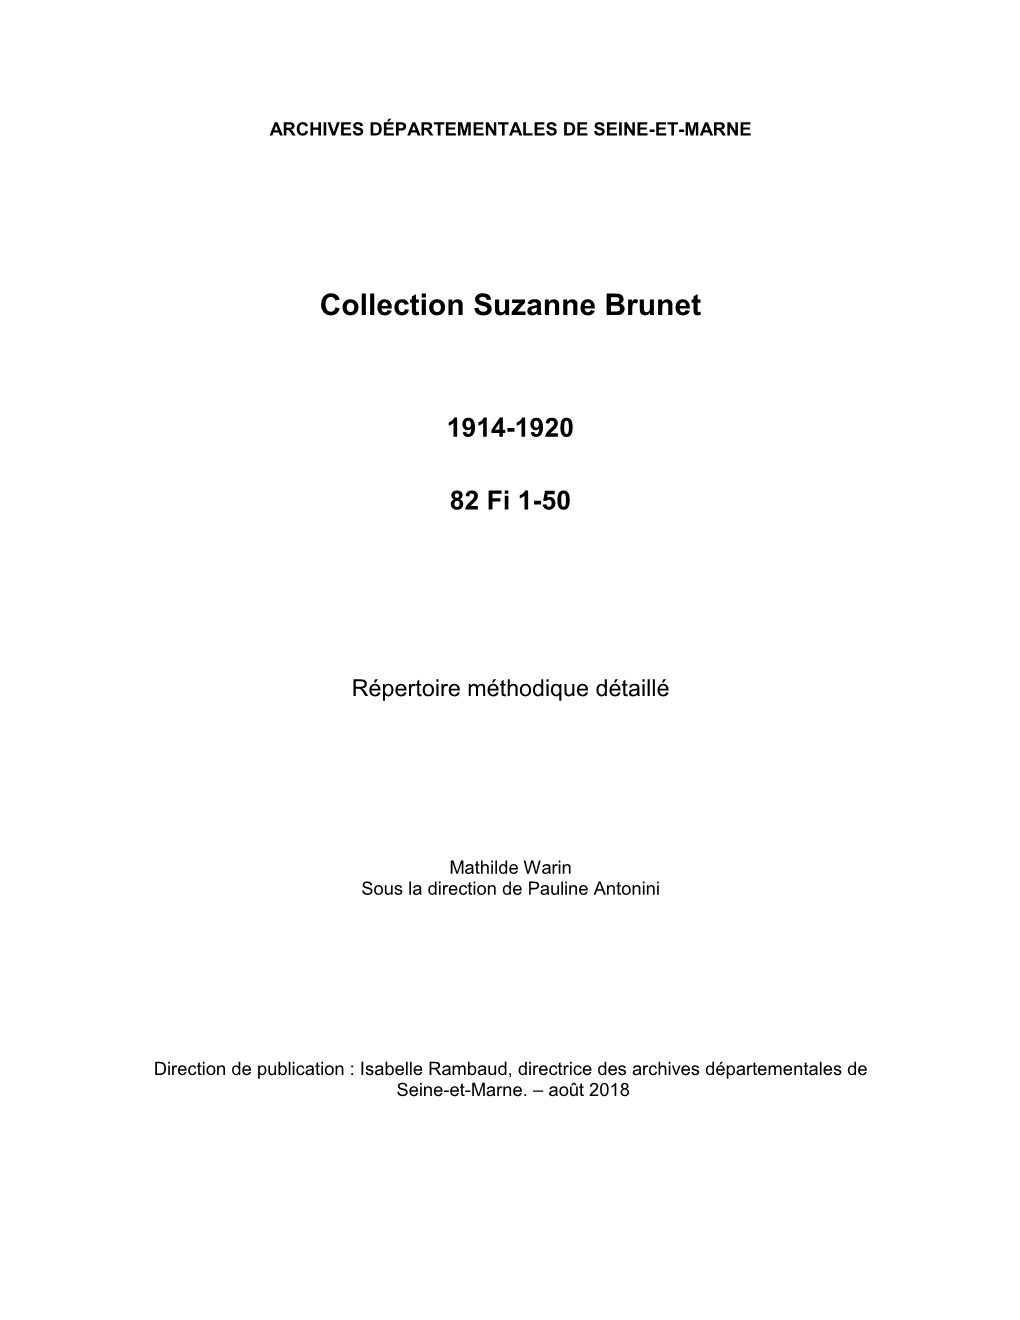 Inventaire De La Collection Suzanne Brunet